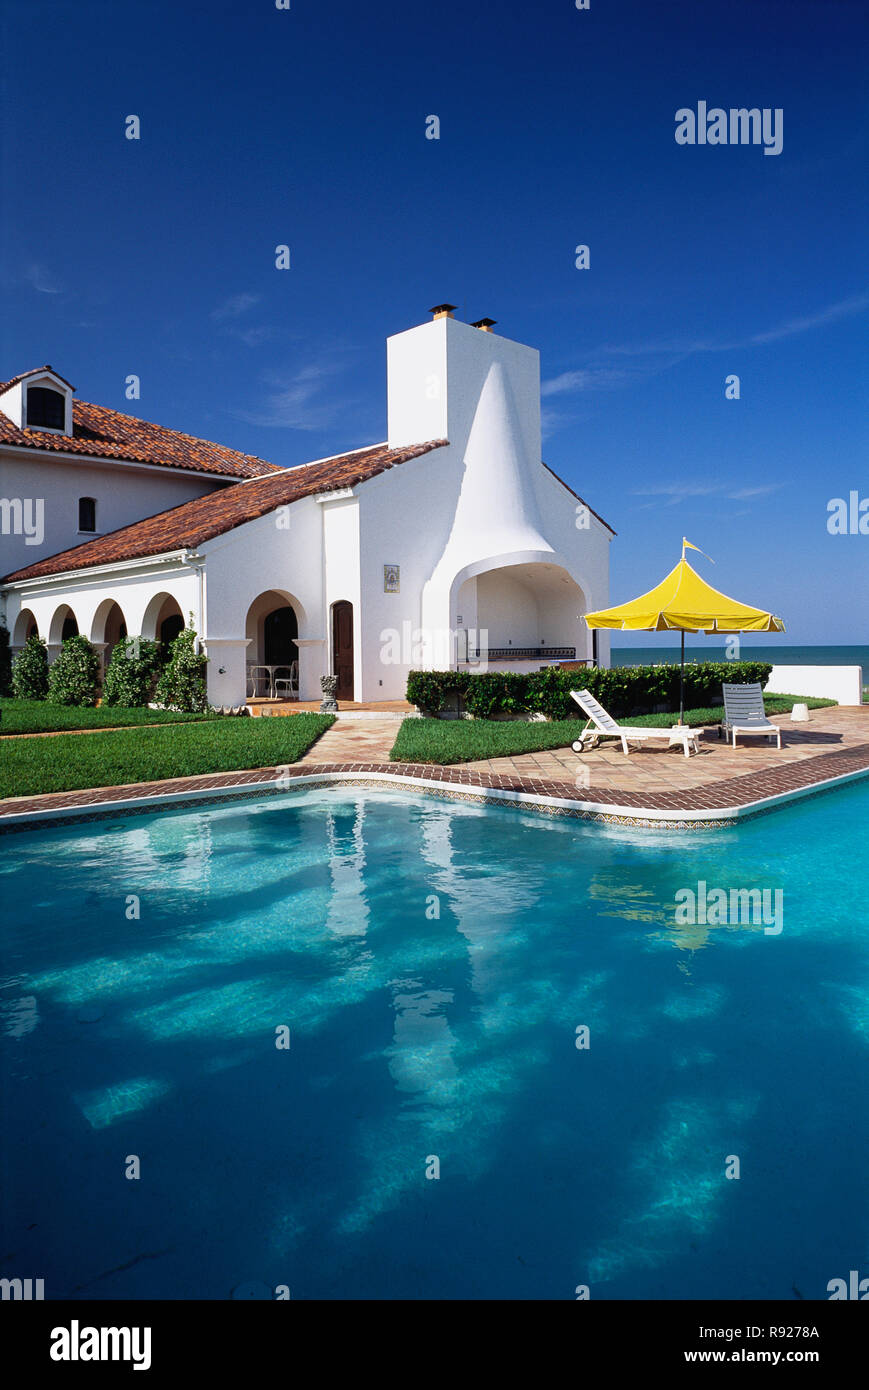 Magnifique hôtel particulier de style espagnol en Floride, USA Banque D'Images